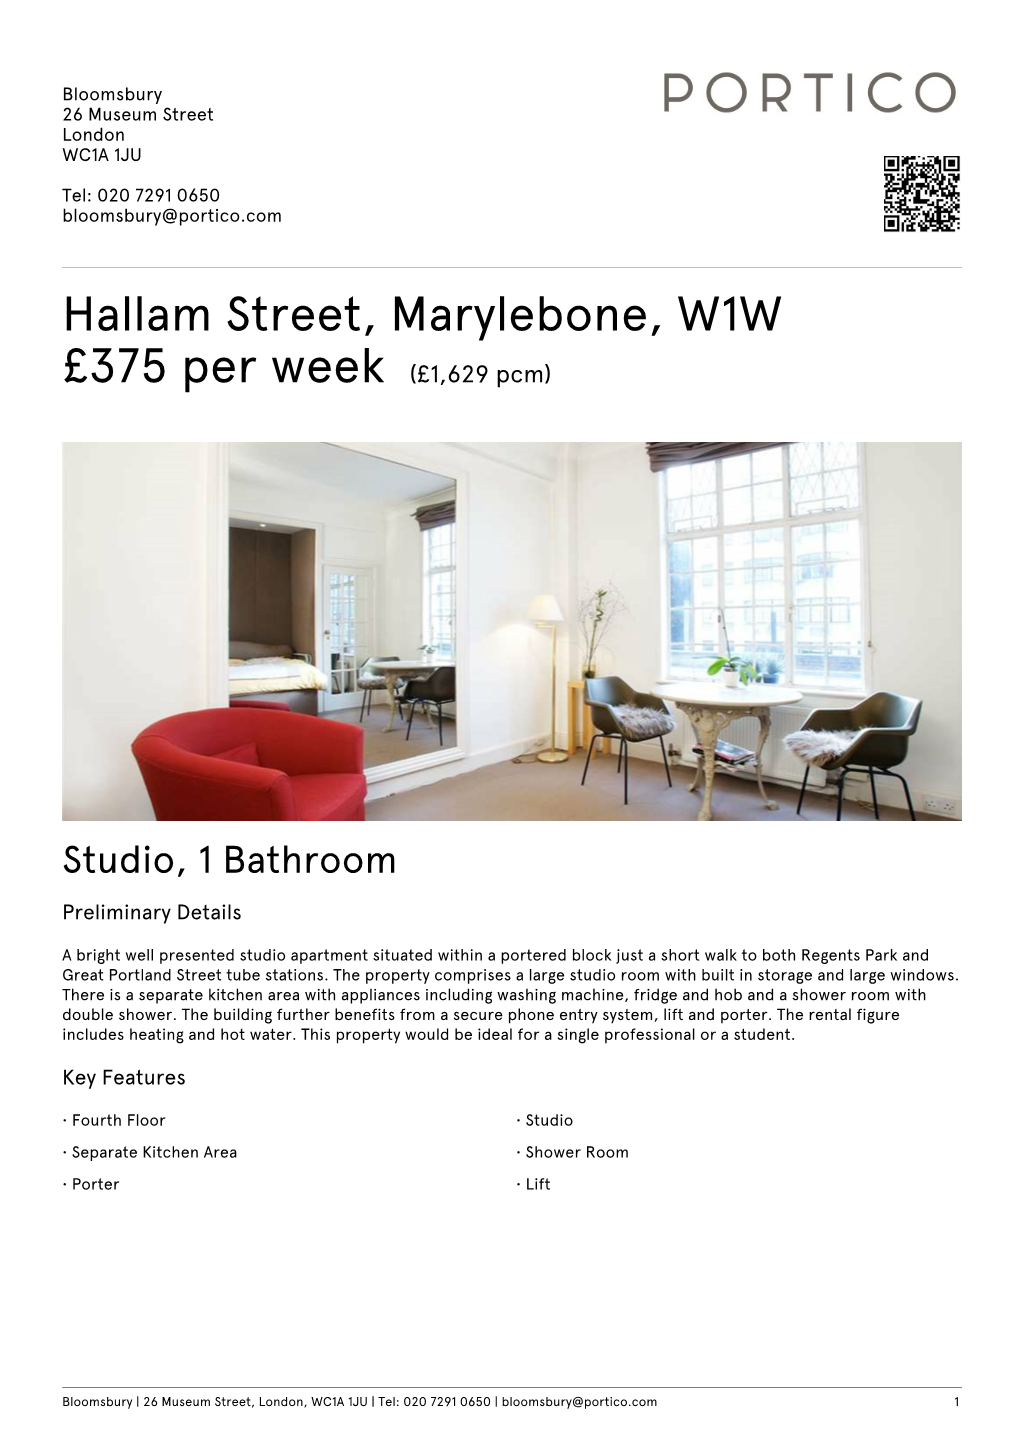 Hallam Street, Marylebone, W1W £375 Per Week